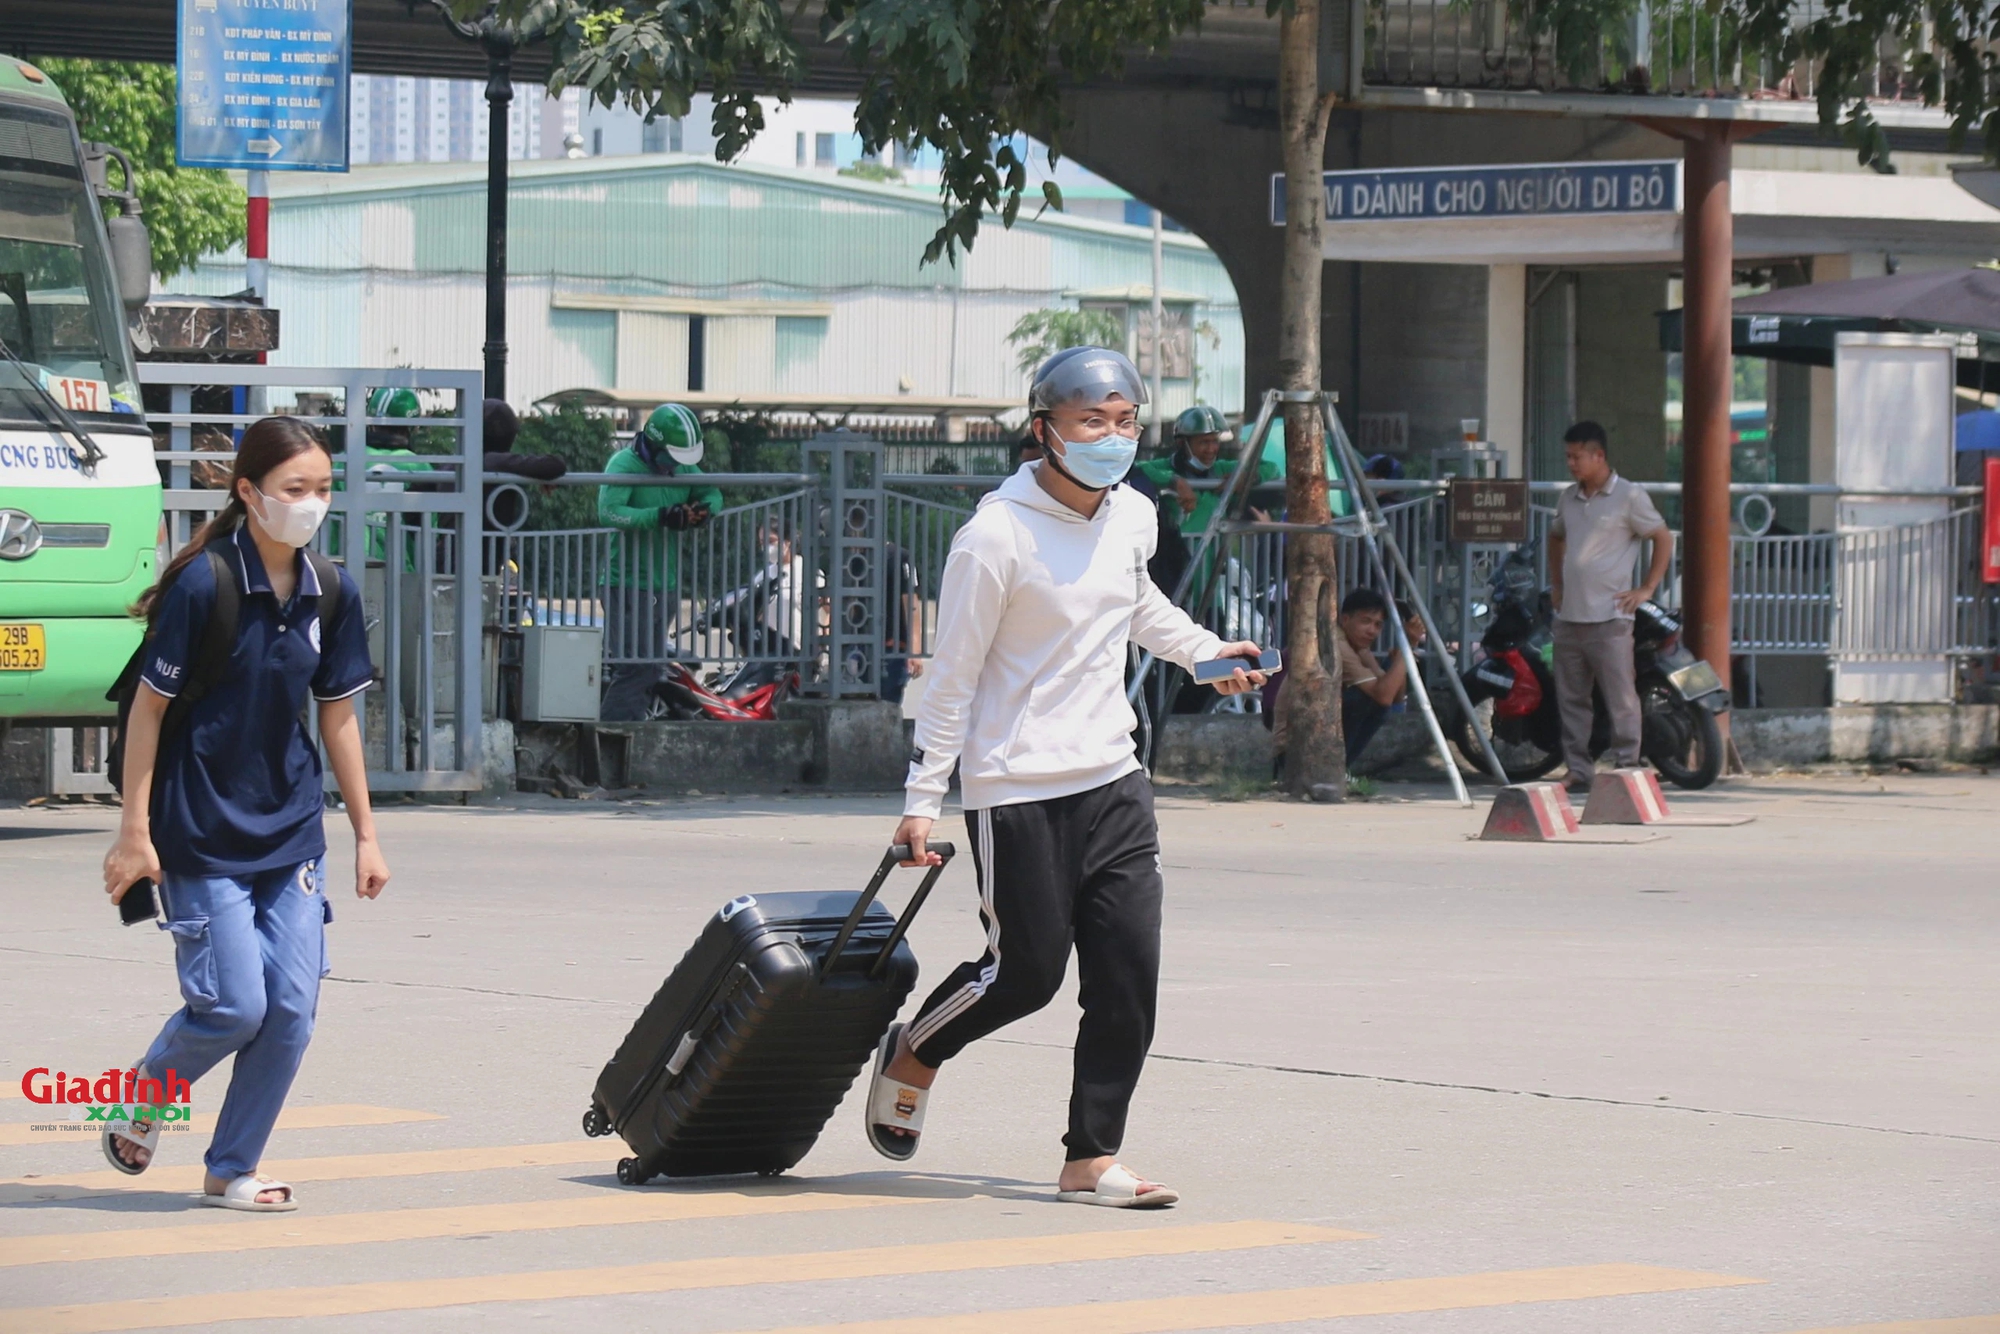 Người dân hối hả về quê nghỉ lễ 30/4 - 1/5, bến xe, phố phường Hà Nội bắt đầu đông đúc- Ảnh 4.